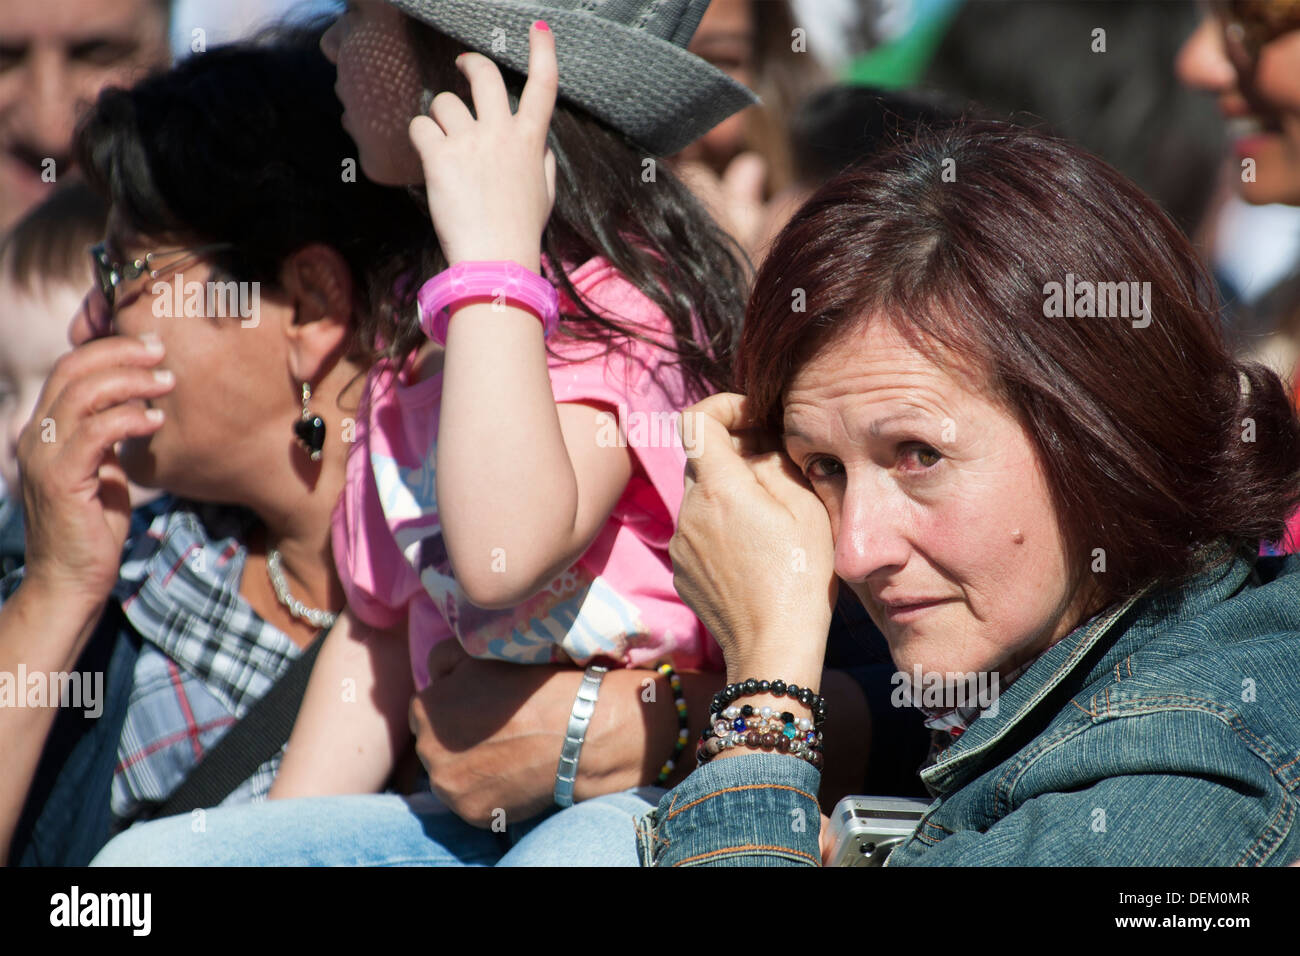 Cri de femme à St Peter's Square dans l'audience du Pape François Banque D'Images